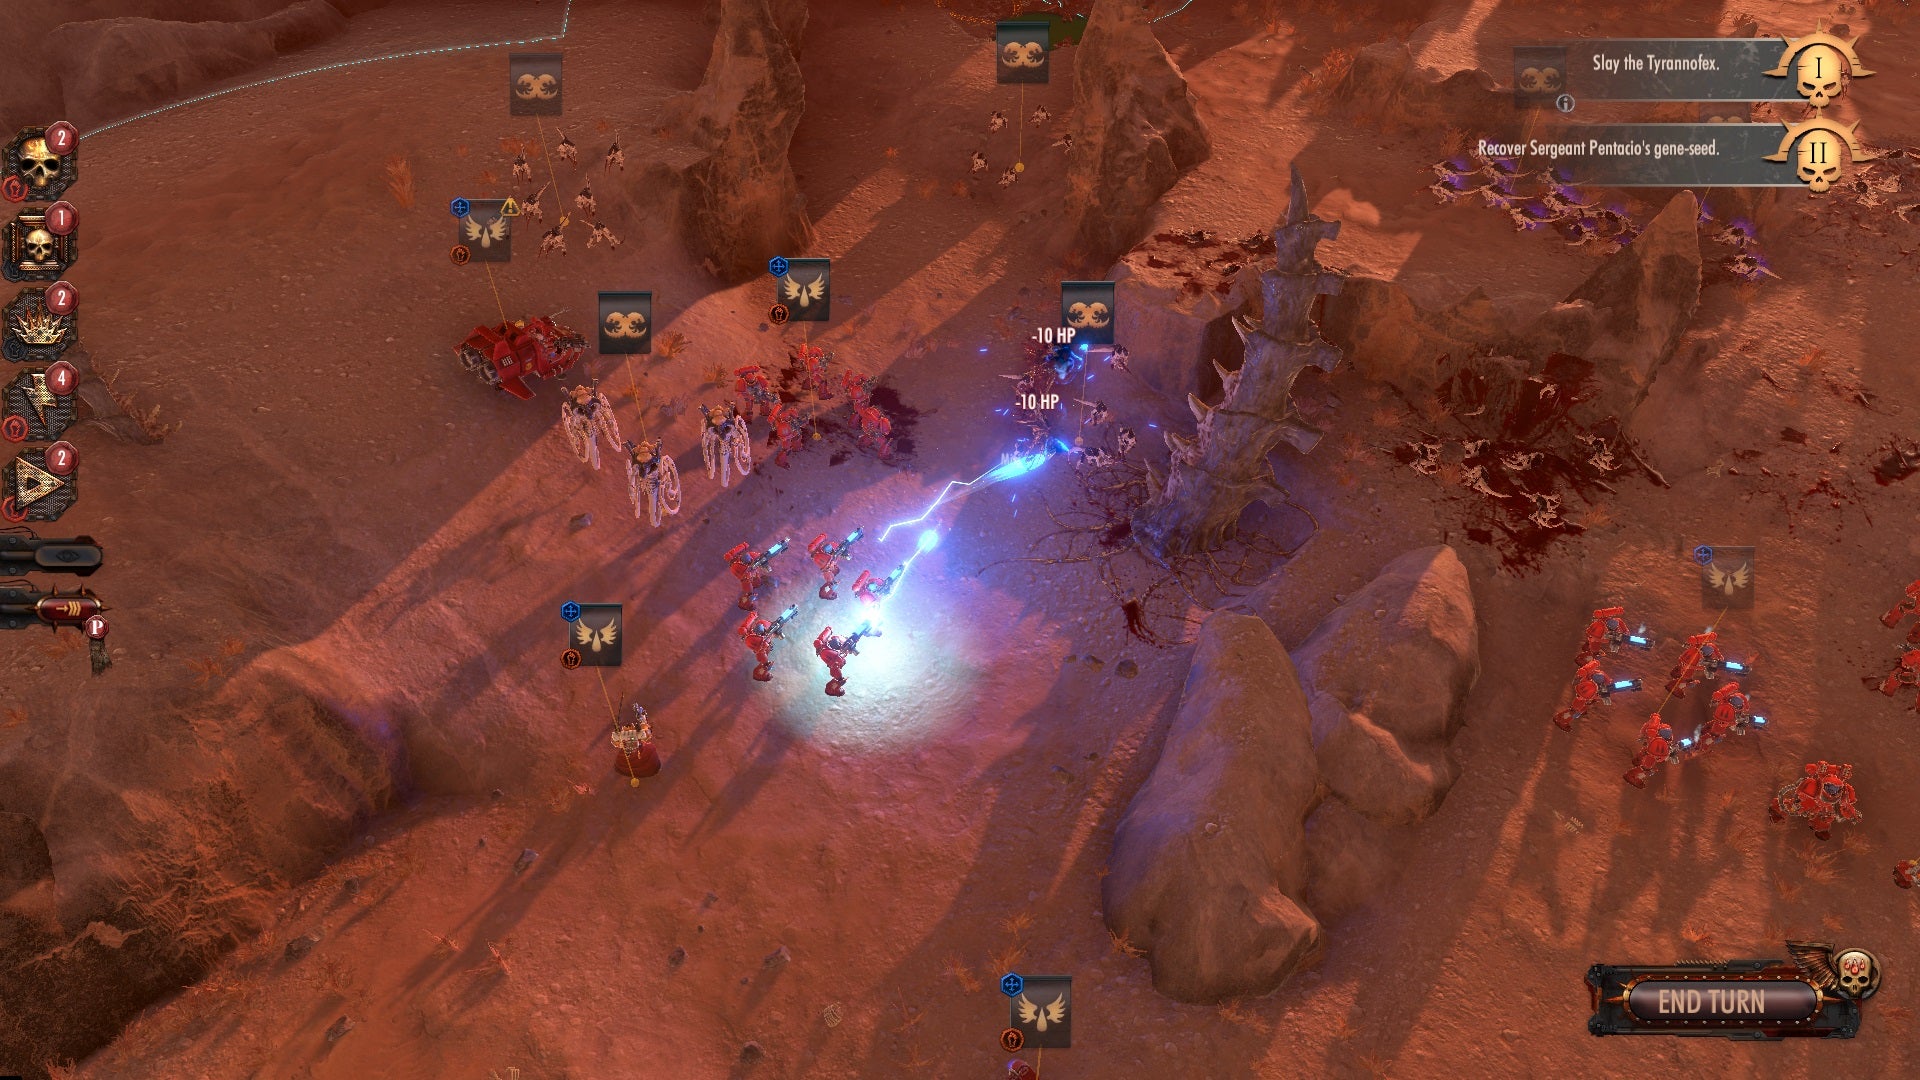 Blood Angels battling Tyranids in a Warhammer 40,000: Battlesector screenshot.